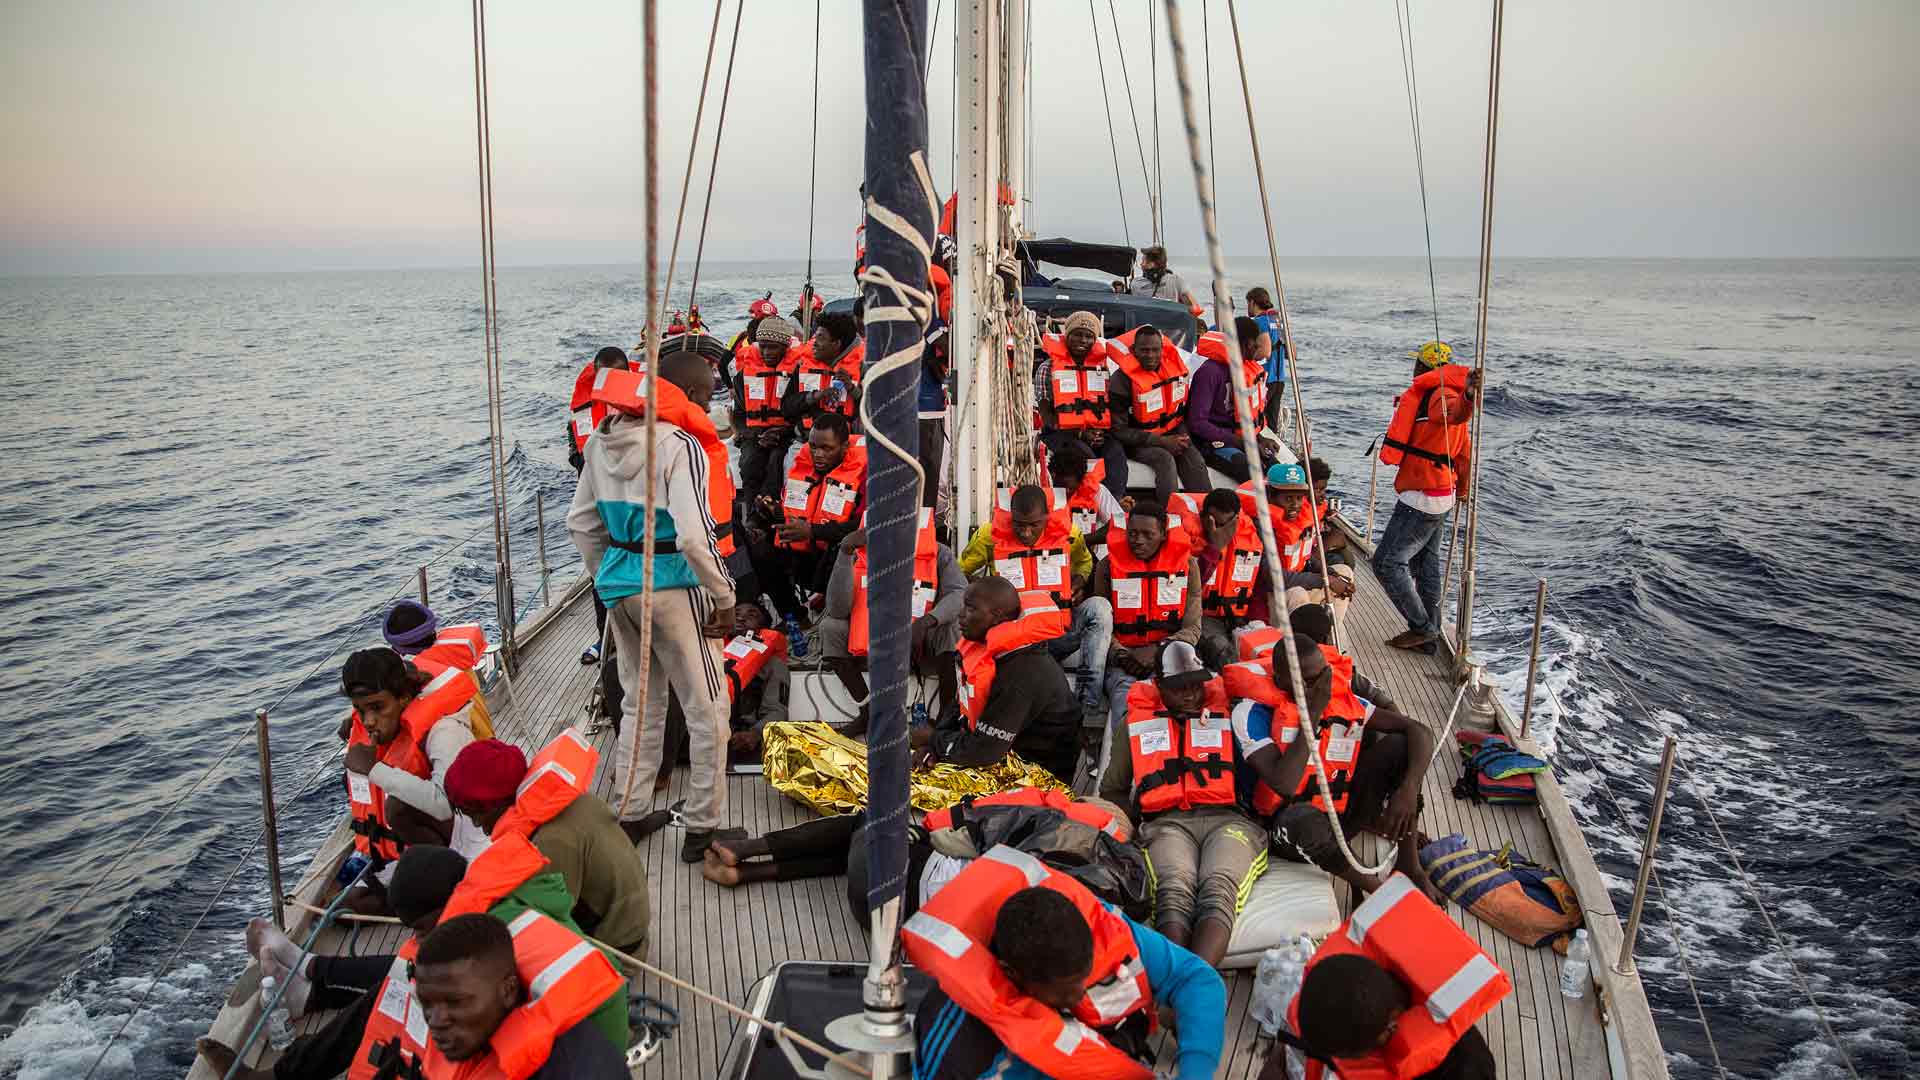 Salvini prohíbe el desembarco de 140 migrantes si otros países europeos no colaboran en su distribución